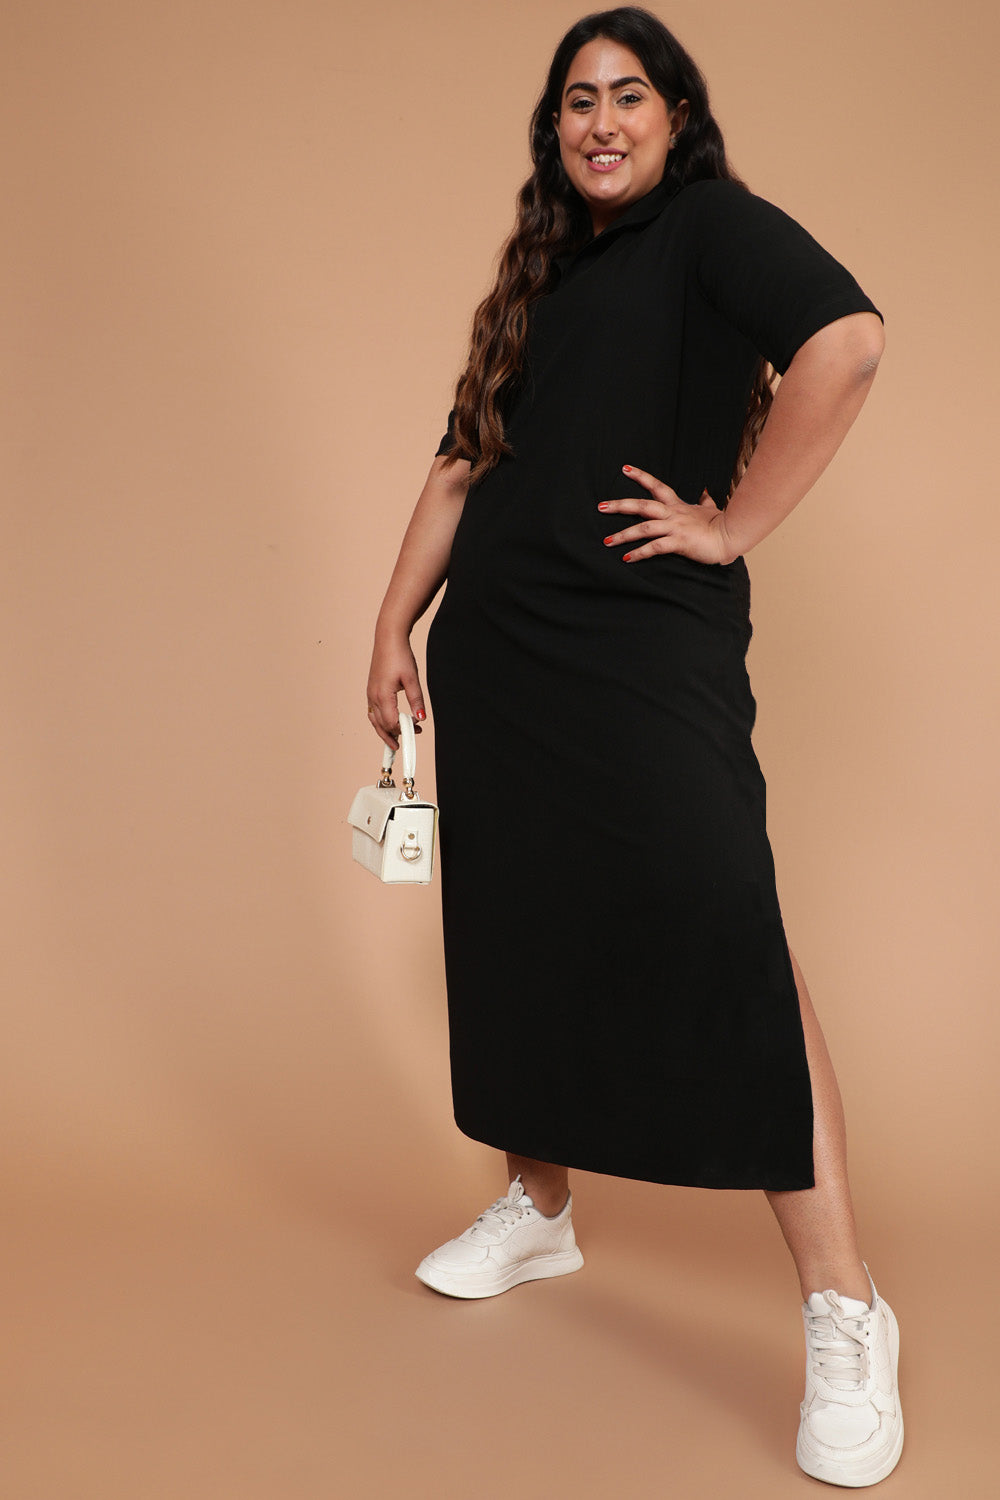 Majroe Hane Fritagelse Buy Online Plus Size Dresses For Women @Amydus